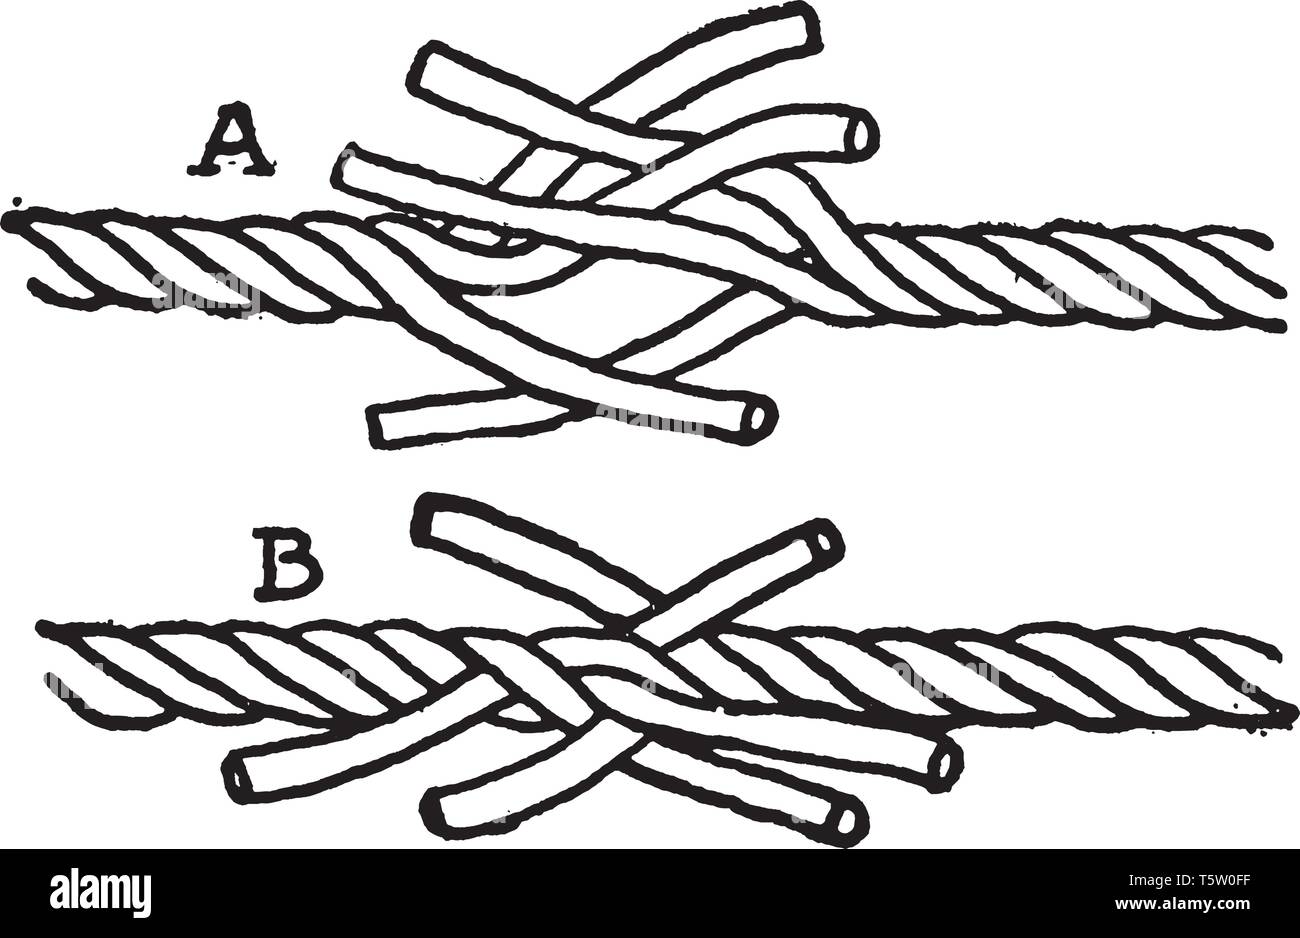 L'épissure courte les extrémités des cordes sont unlaid sur une courte distance et a rassemblé, vintage dessin ou gravure illustration. Illustration de Vecteur